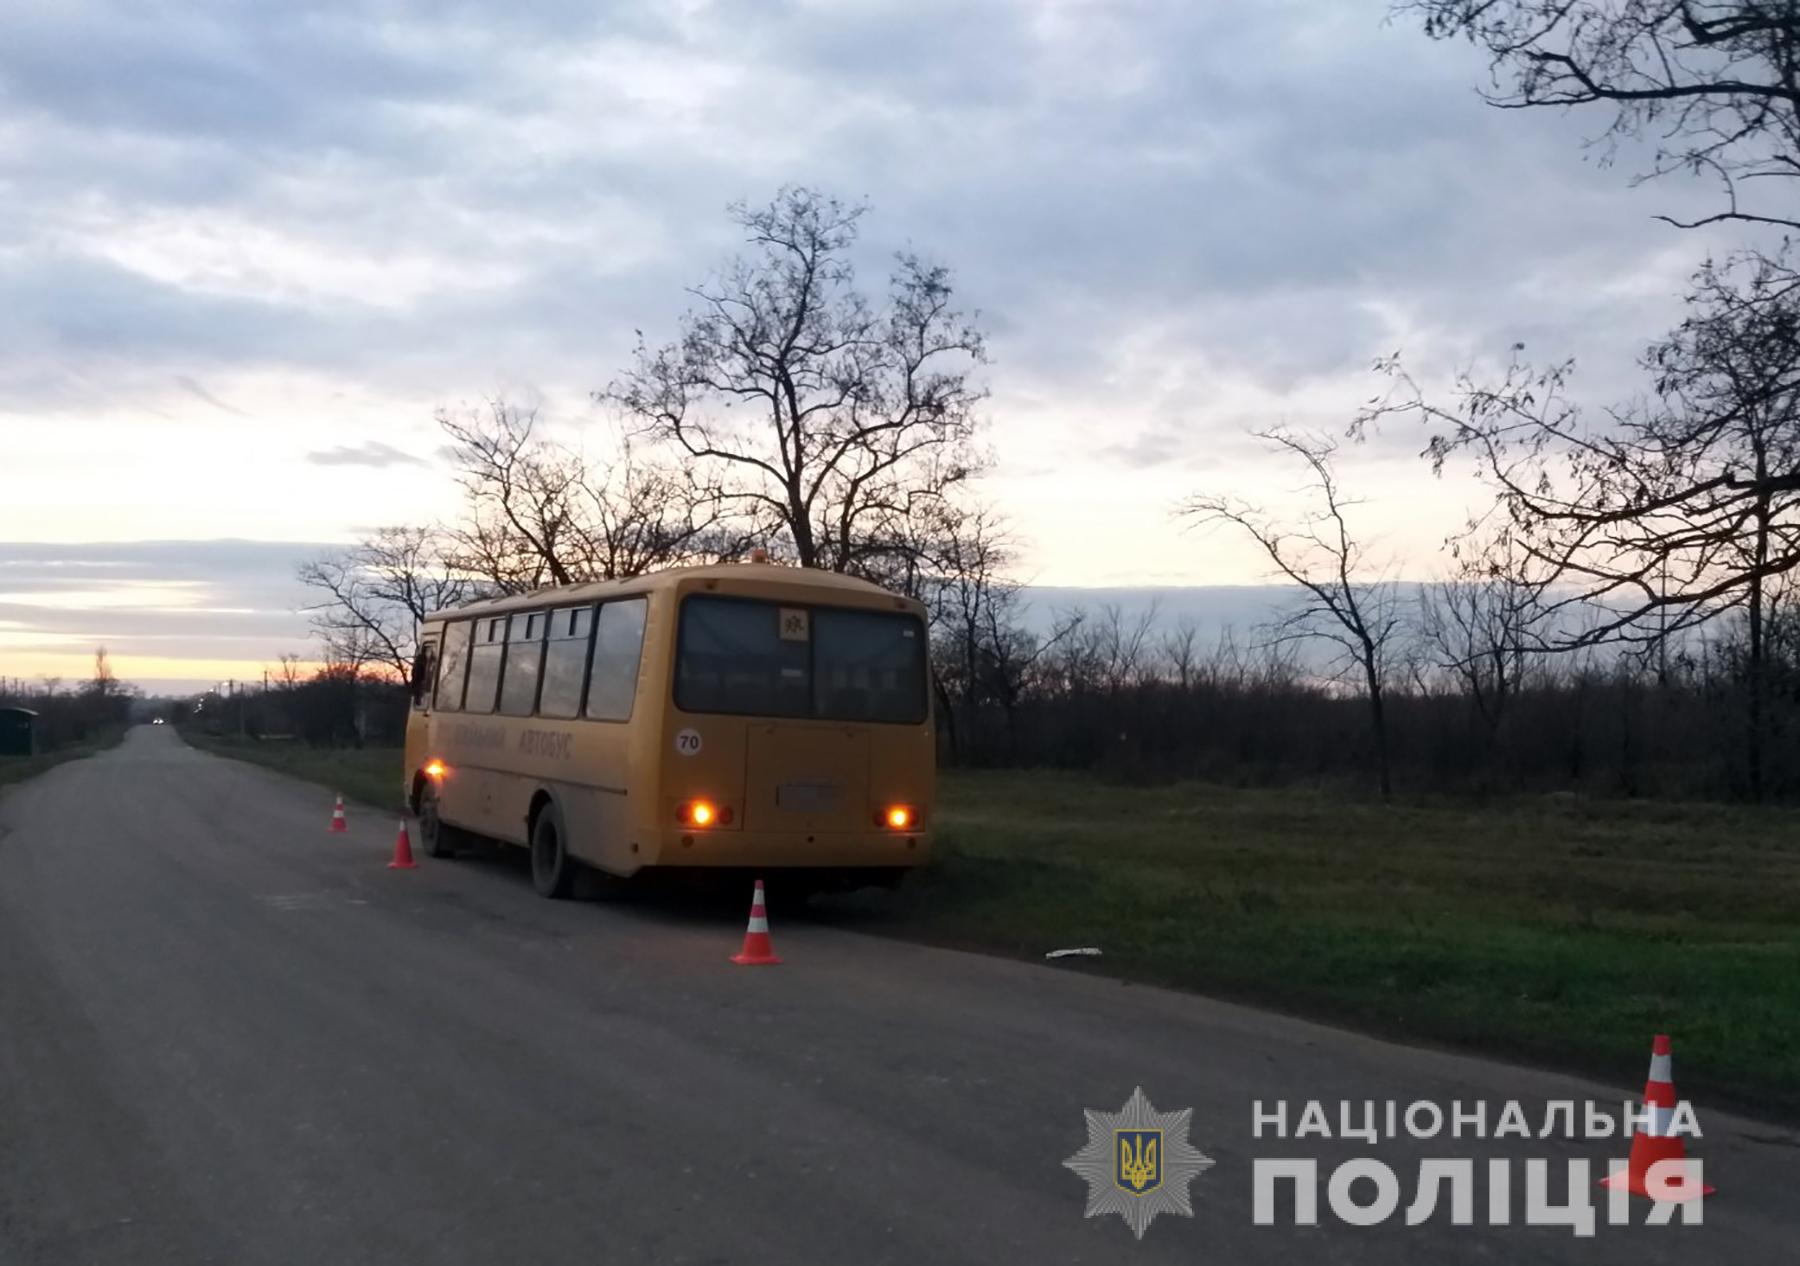 ДТП со школьным автобусом в Запорожской области: устанавливаются обстоятельства и причины (ФОТО)